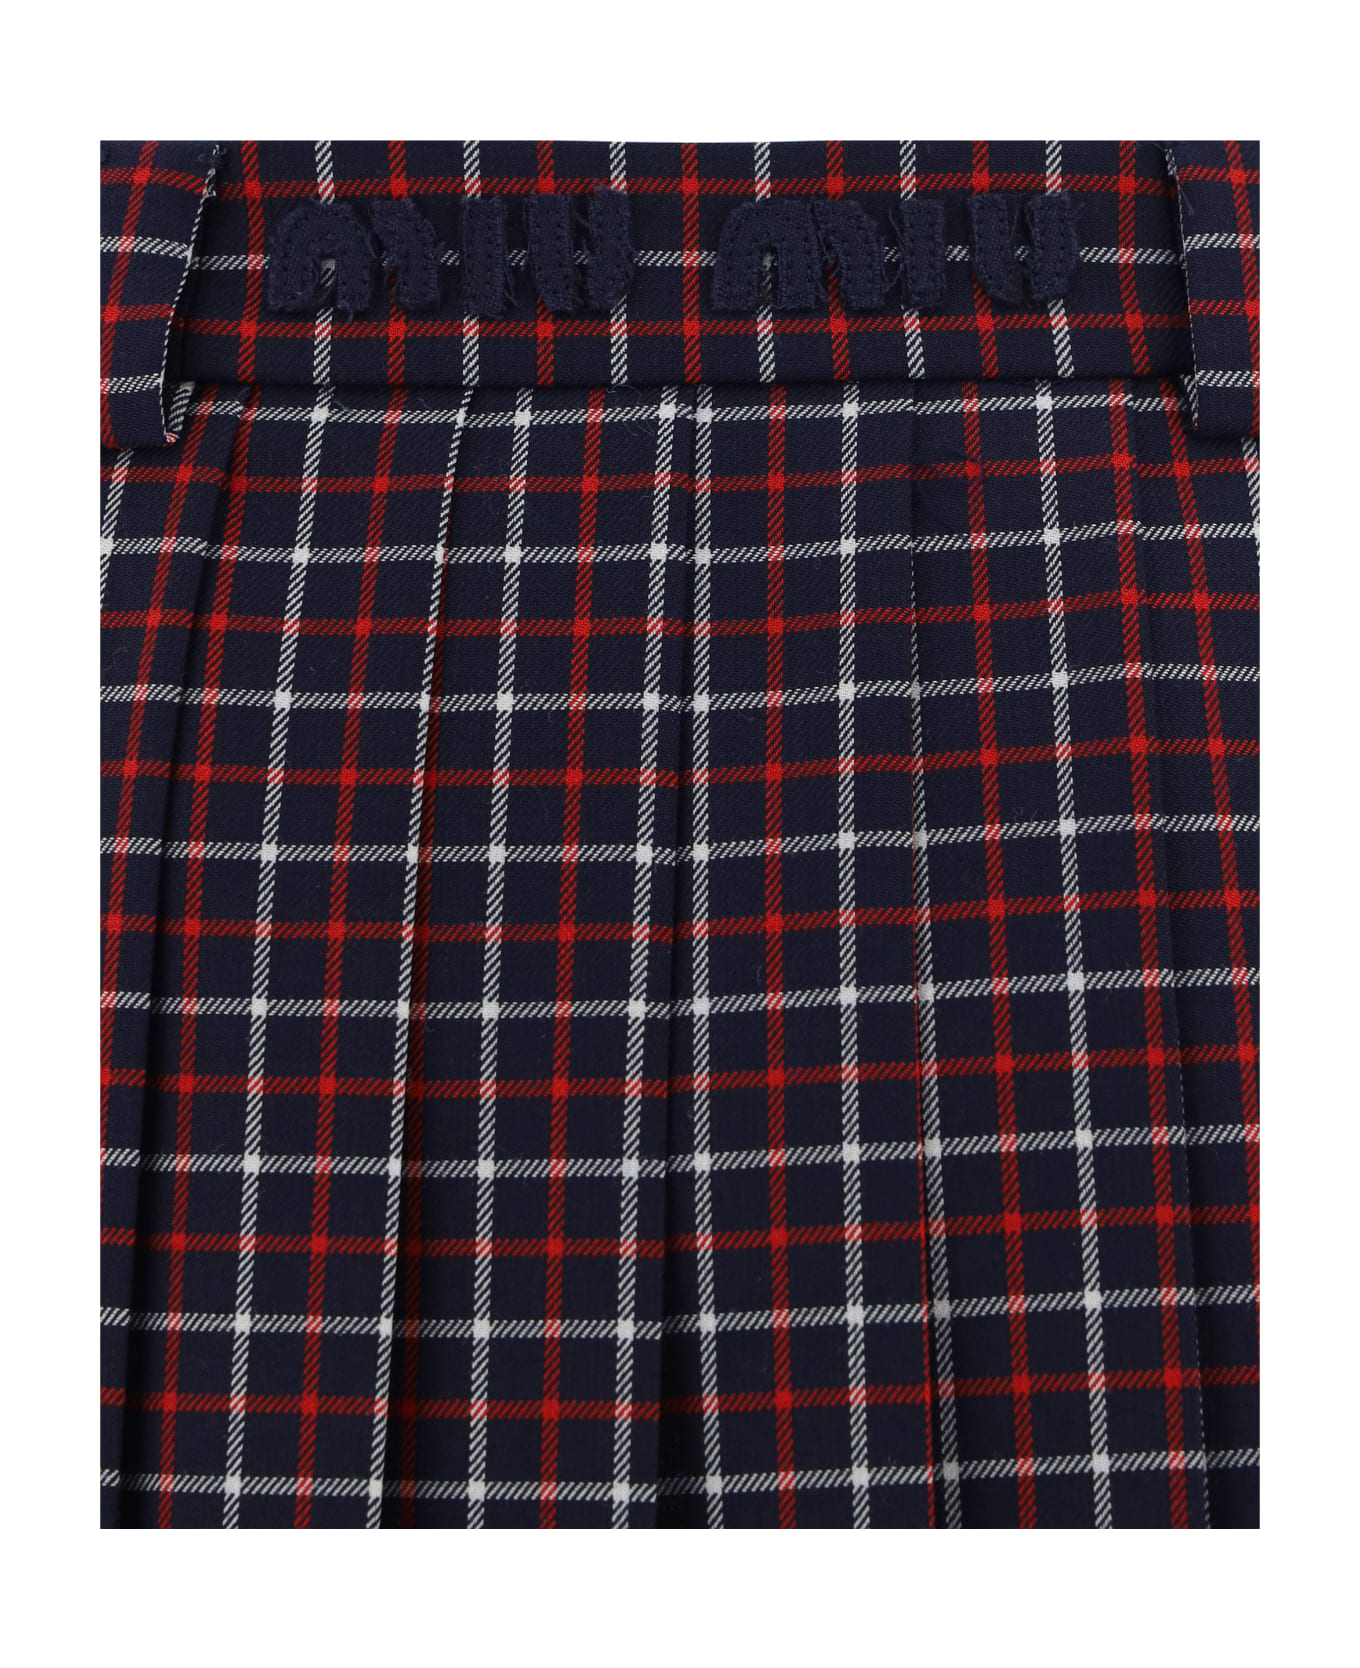 Miu Miu Mini Skirt - Bleu+rosso スカート